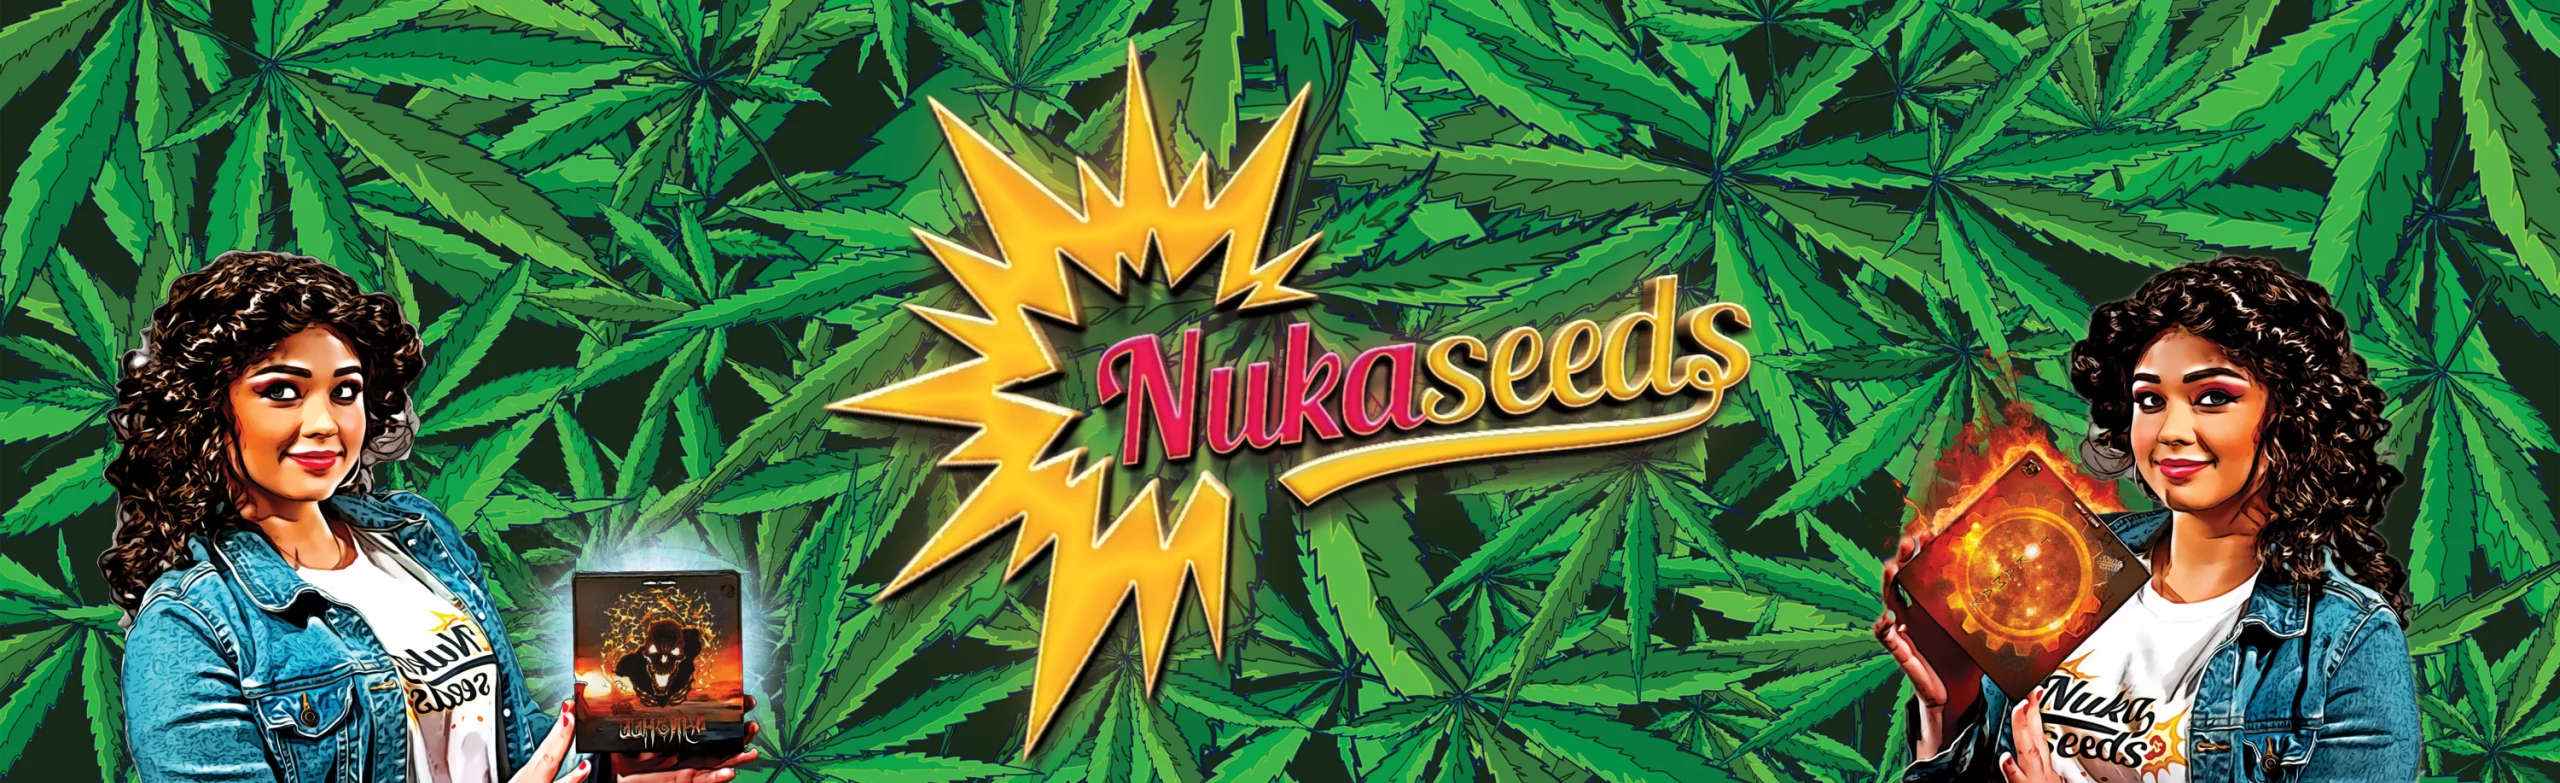 Nuka seeds social back ground cannabis logo